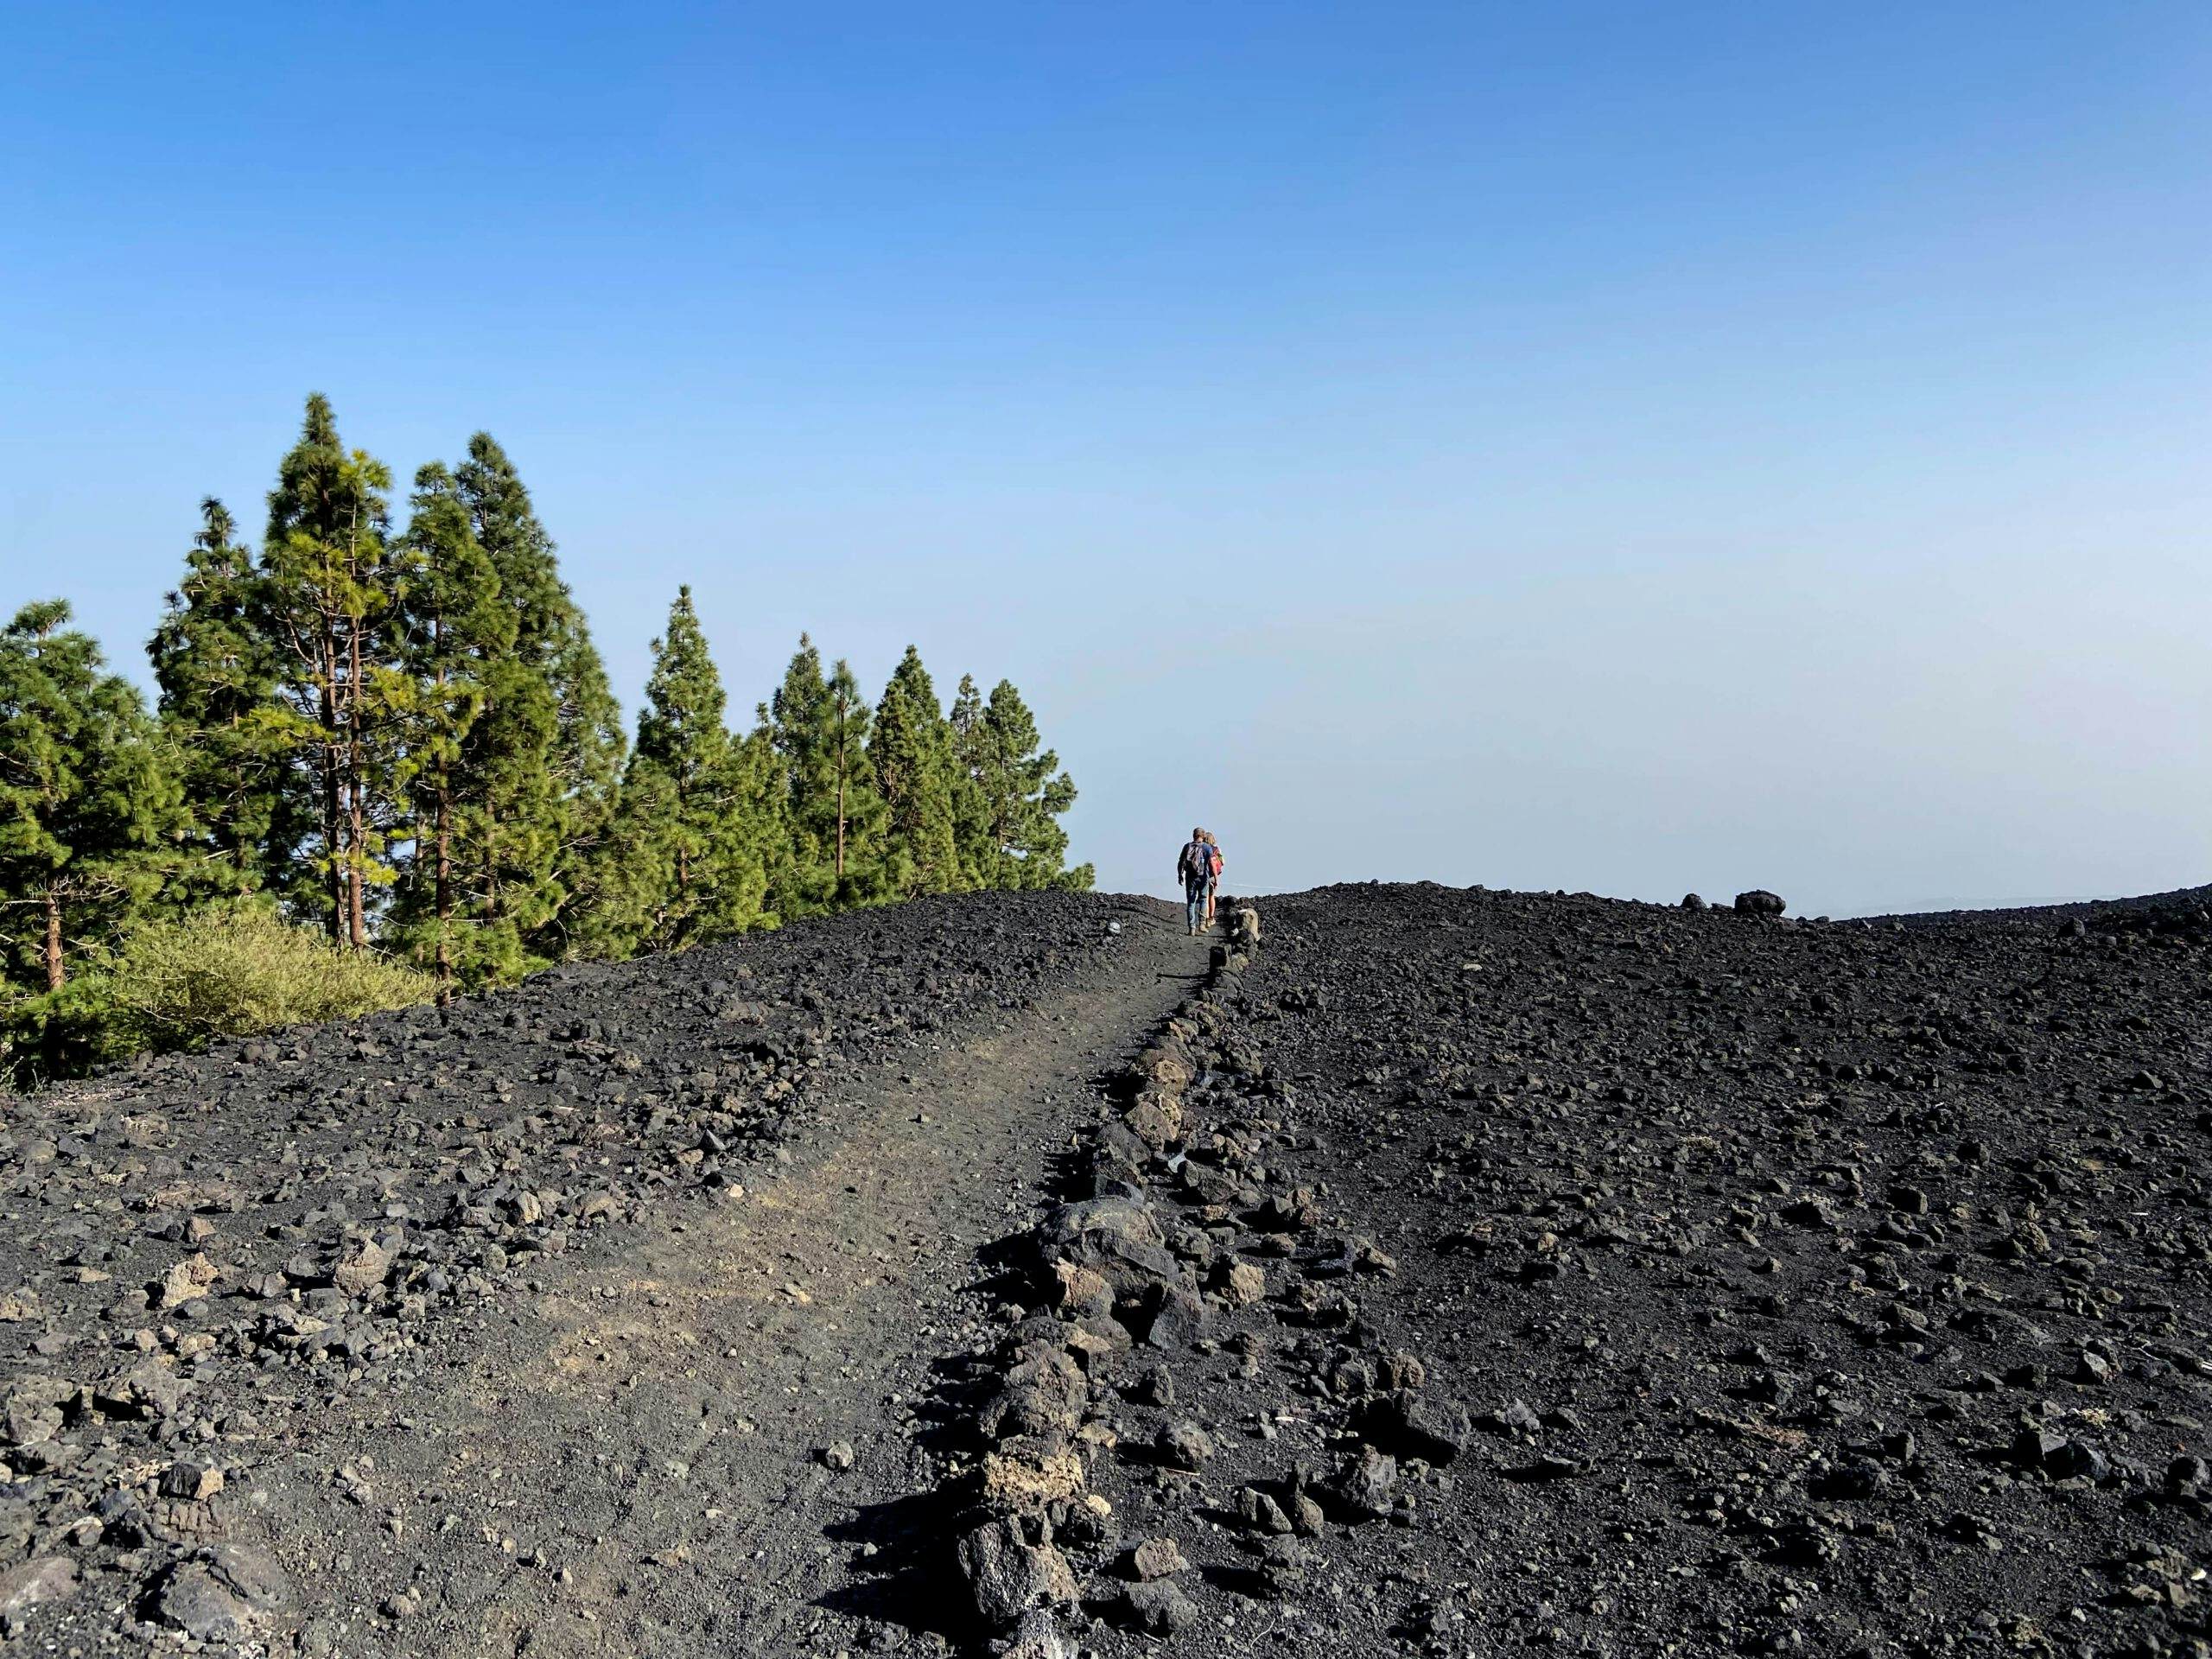 Hikers on the descent path at the volcano Montaña de las Arenitas